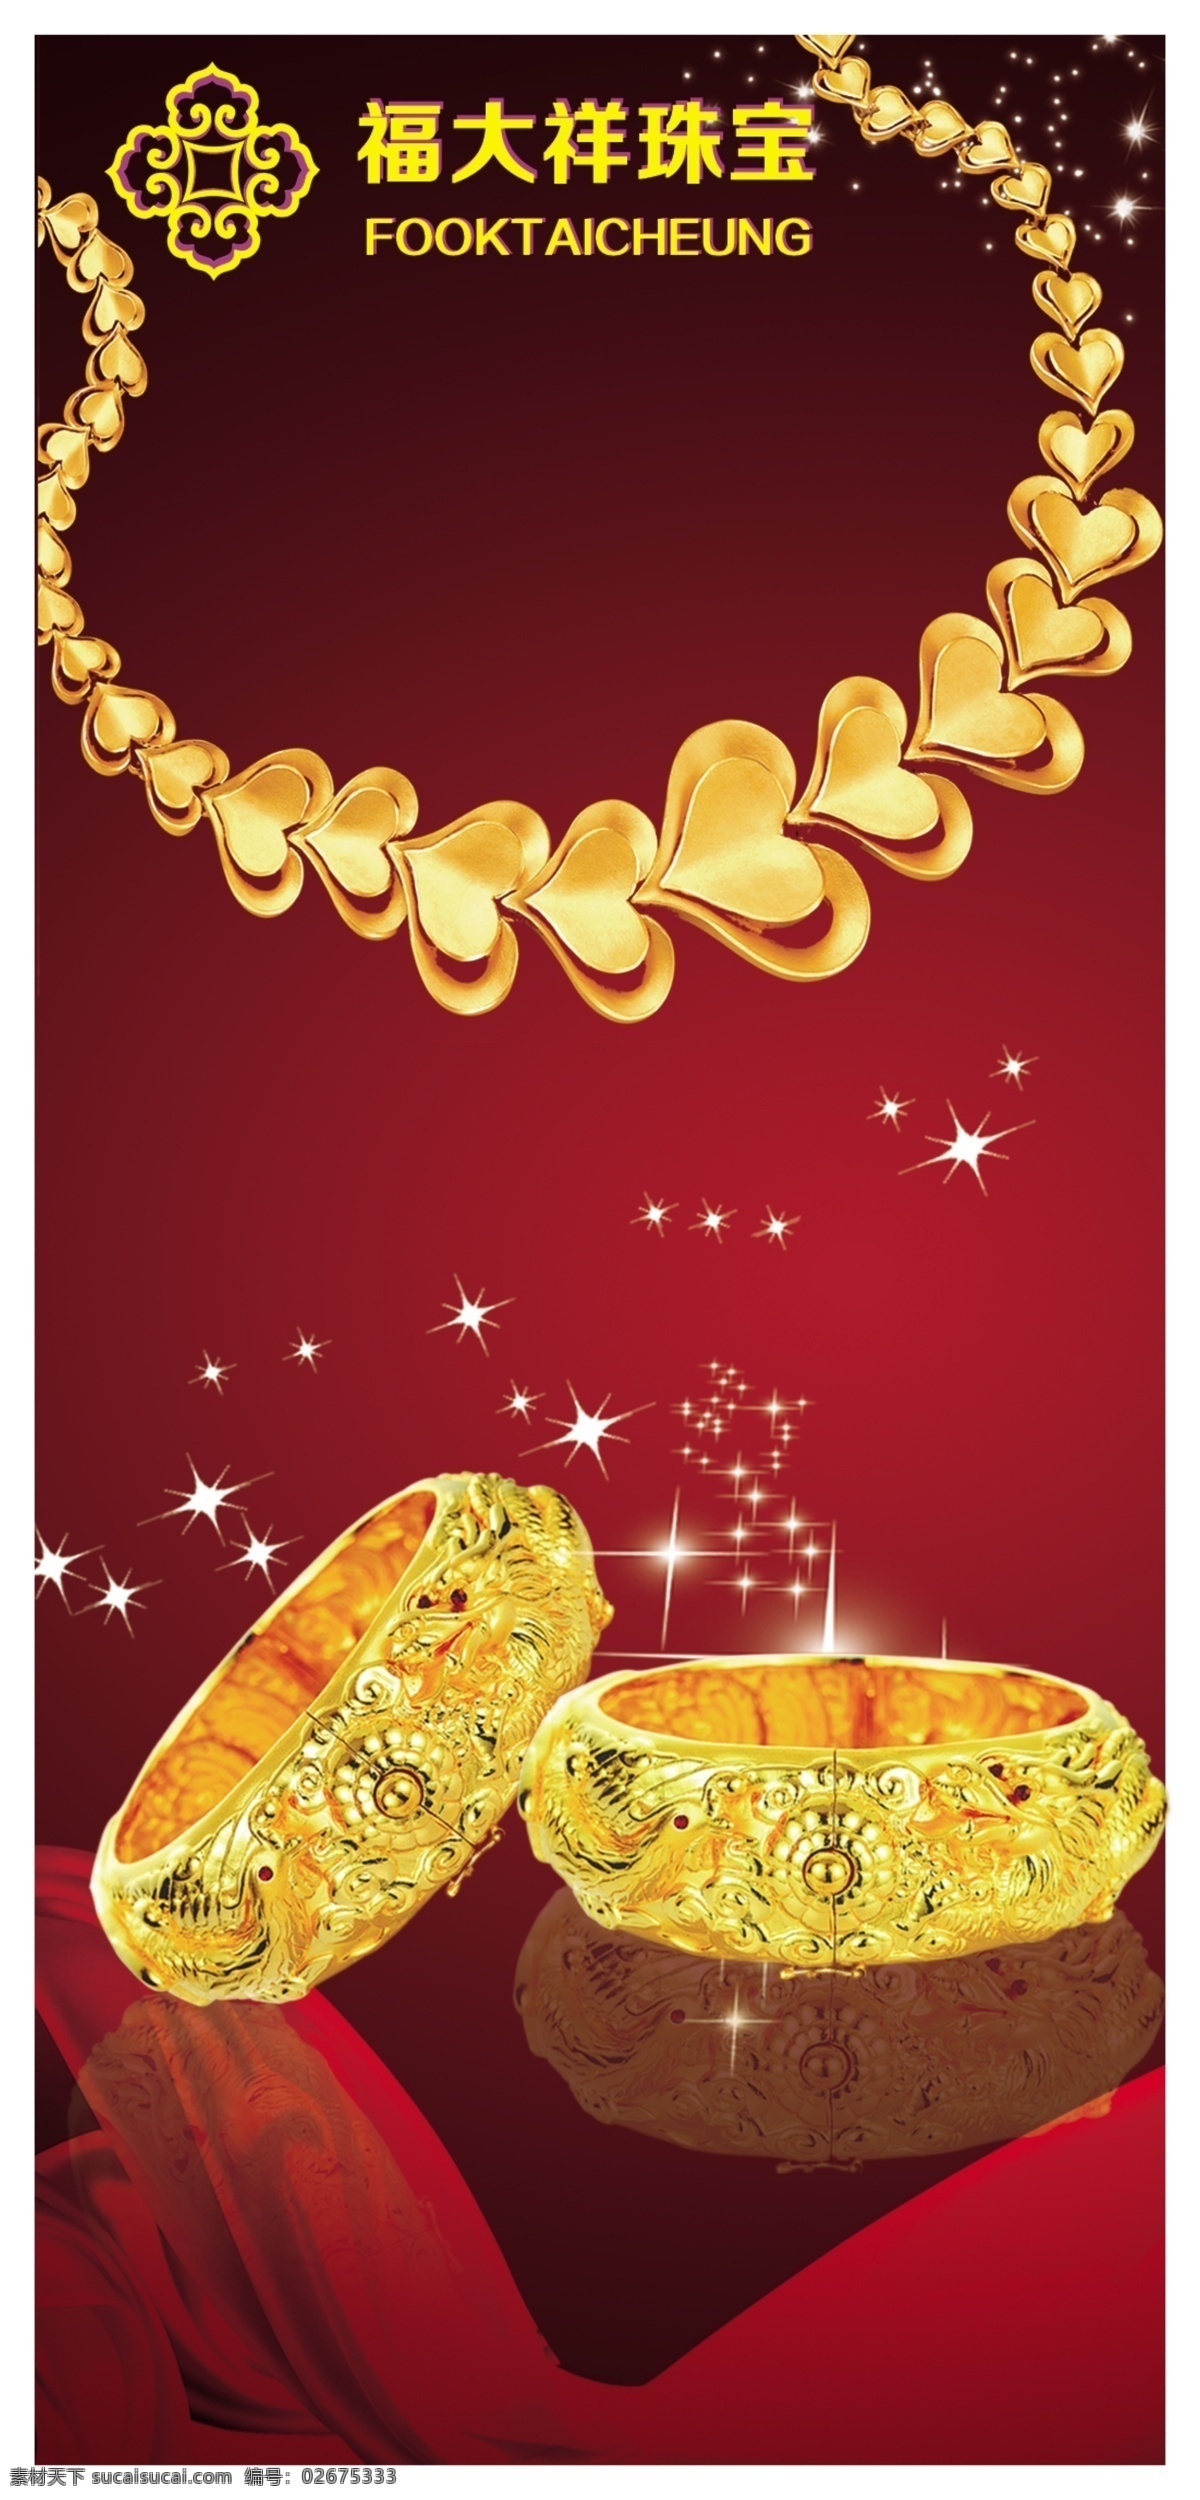 黄金 珠宝 黄金手镯 黄金吊坠 黄金项链 璀璨 福大祥珠宝 黄金饰品 首饰 饰品 分层